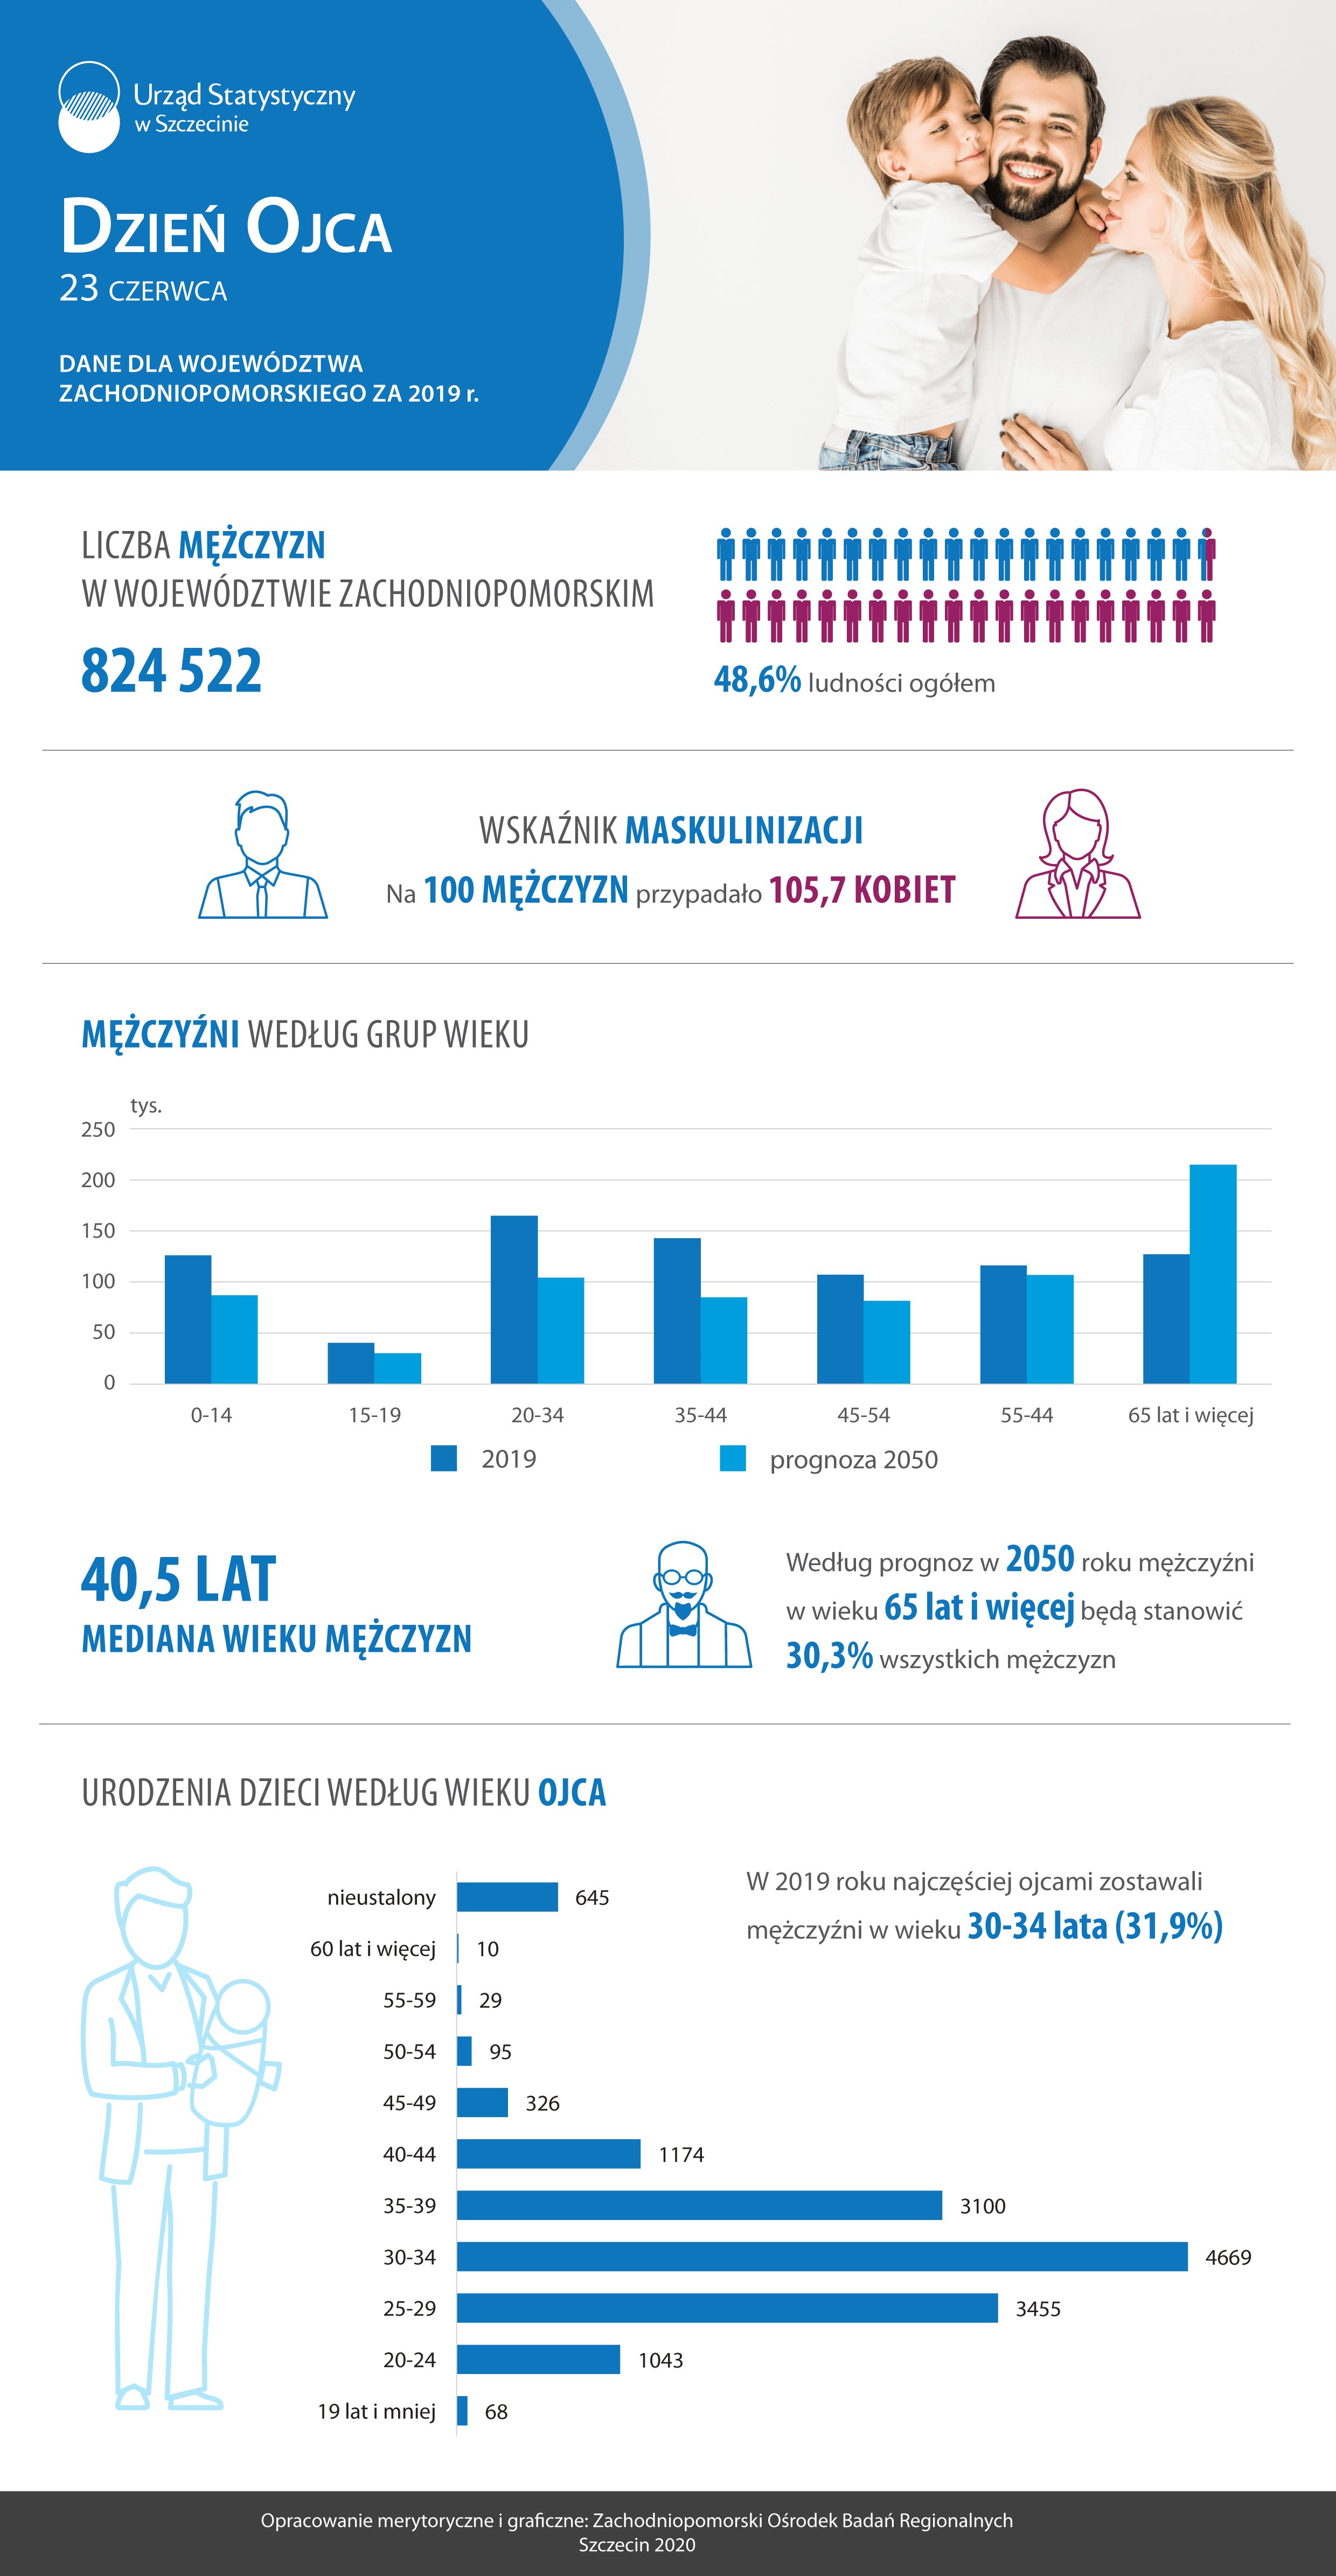 Infografika opublikowana przez Urząd Statystyczny w Szczecinie z okazji Dnia Ojca przedstawia wizualizację danych dotyczących ojców w województwie zachodniopomorskim w 2019 roku